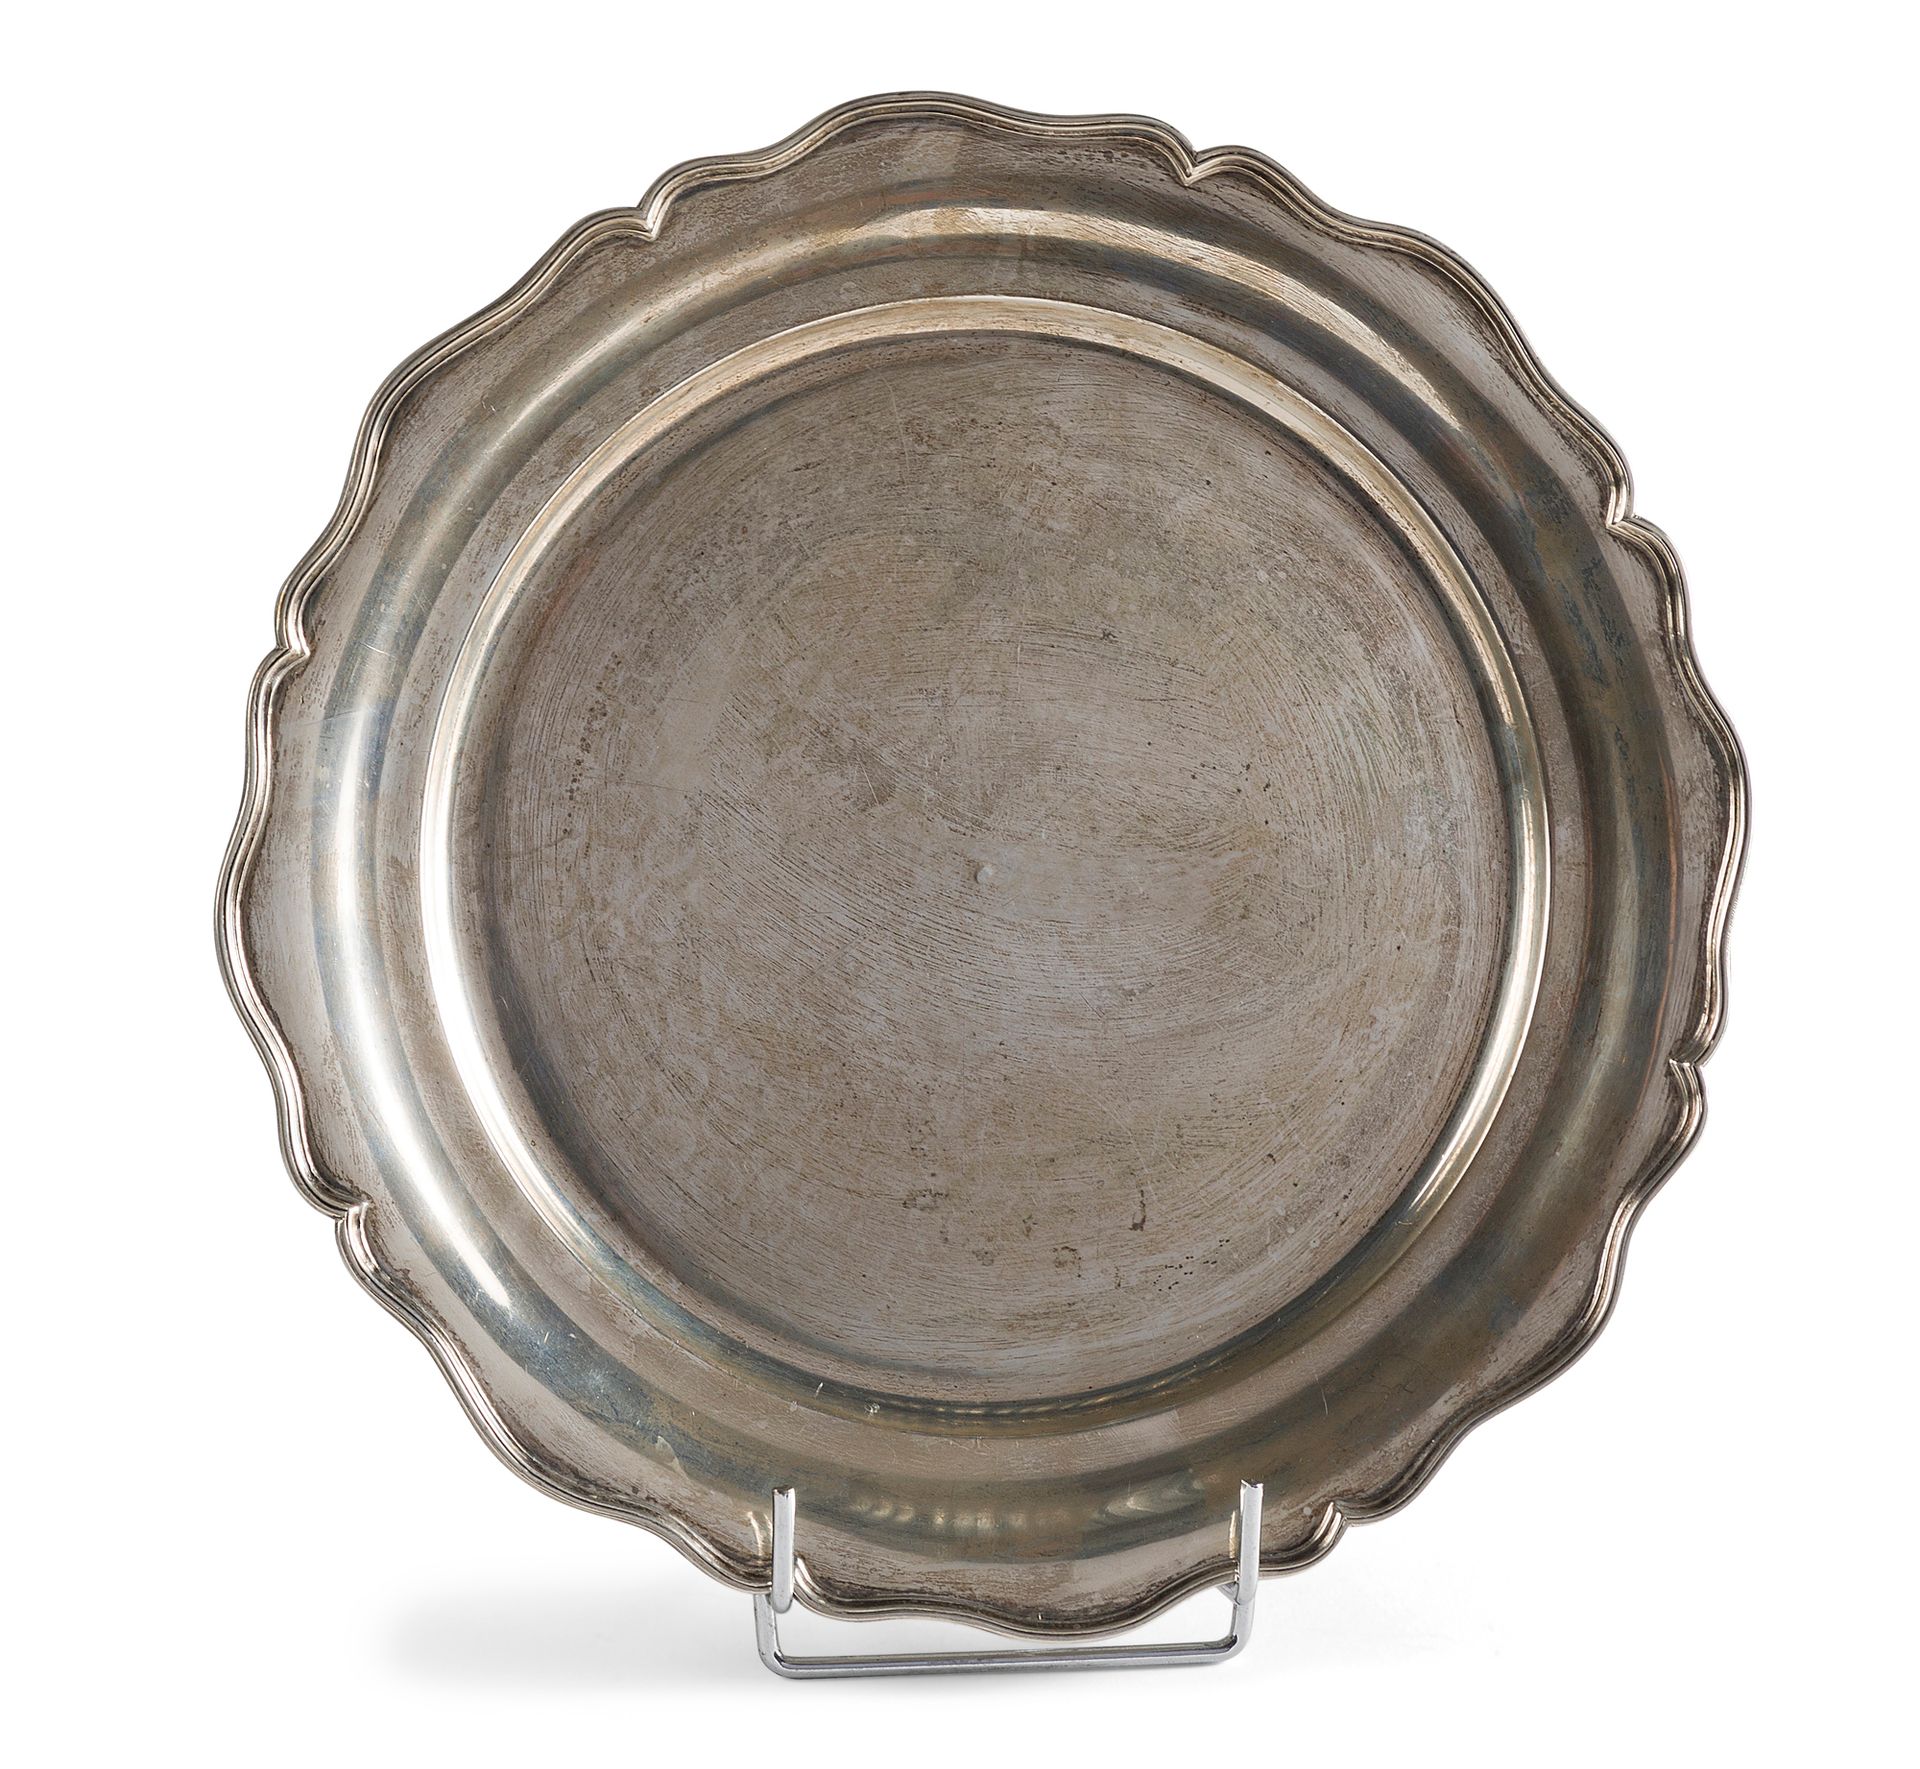 Null 圆形多裂纹银盘

埃及作品 20世纪

直径27厘米

重量484克